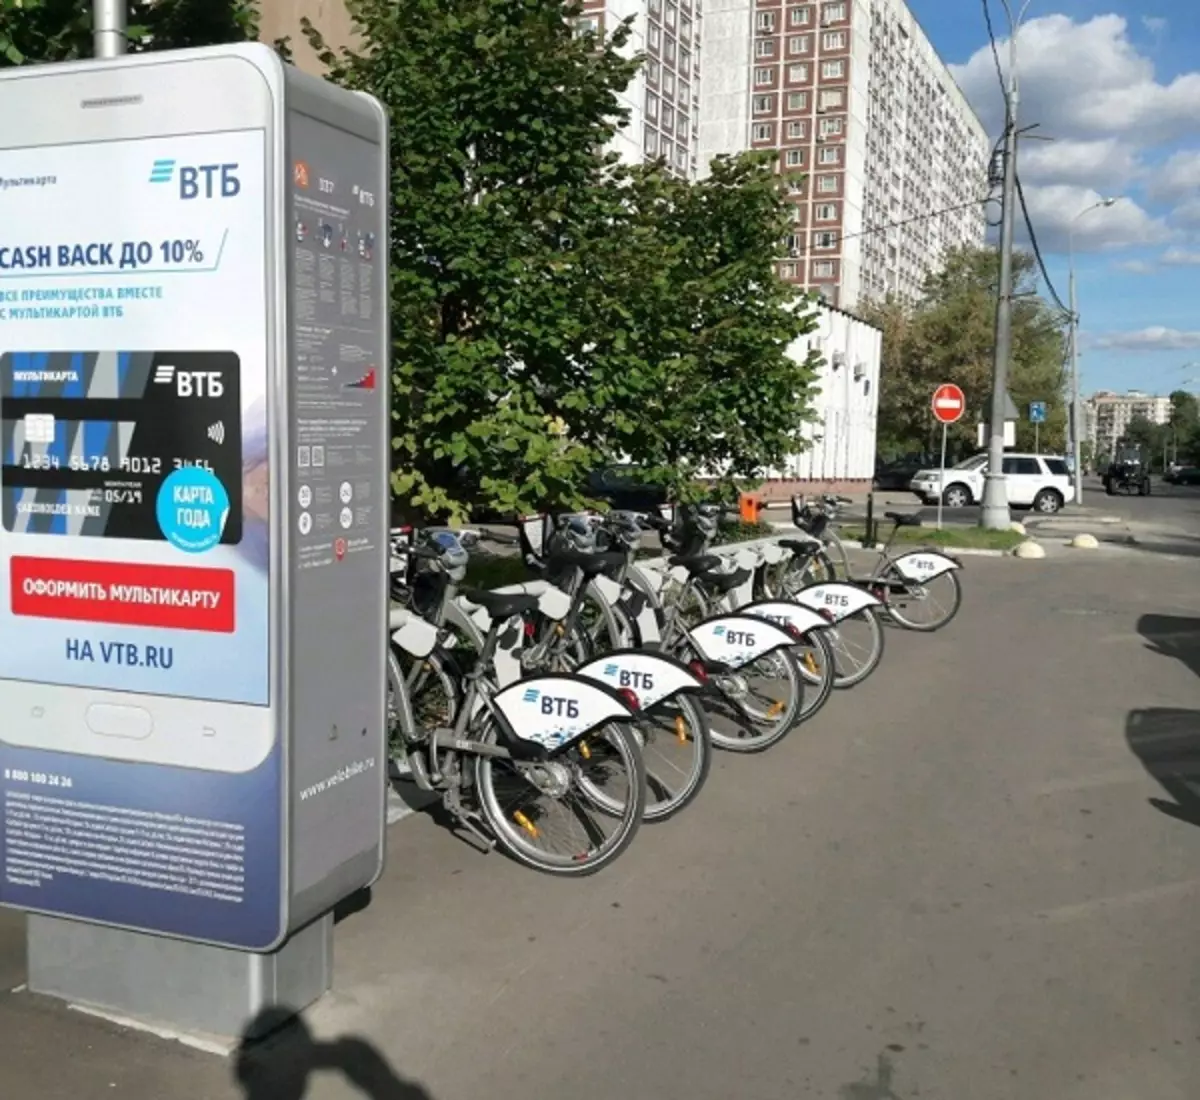 دوچرخه VTB: چگونه از اجاره دوچرخه استفاده کنید؟ چگونه یک دوچرخه را بردارید و آن را از طریق برنامه پرداخت کنید؟ 8507_20